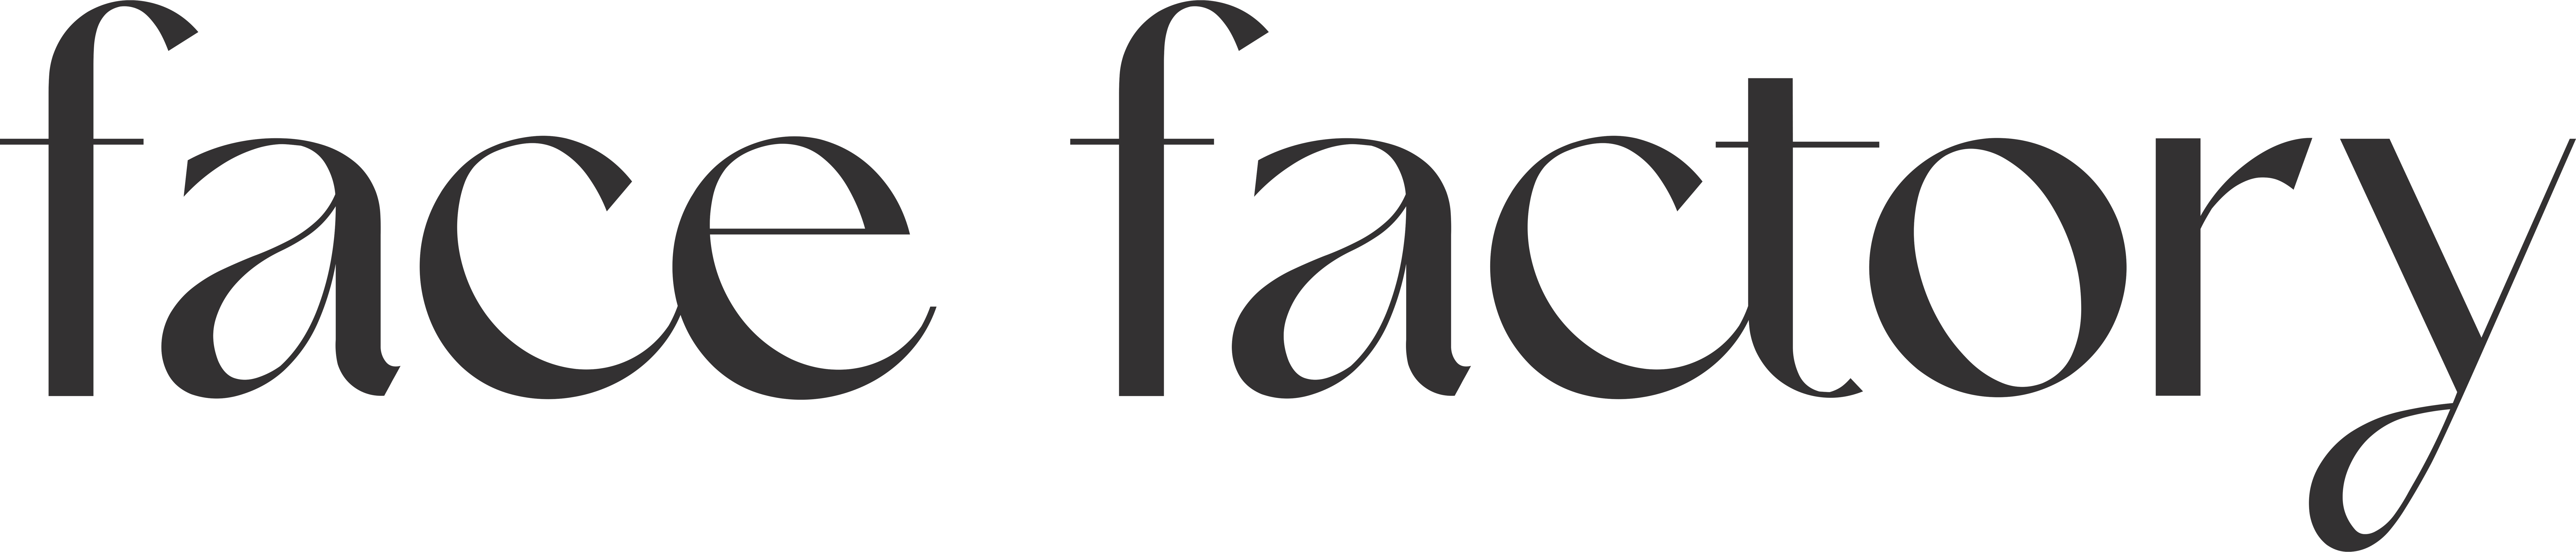 logo FACE FACTORY